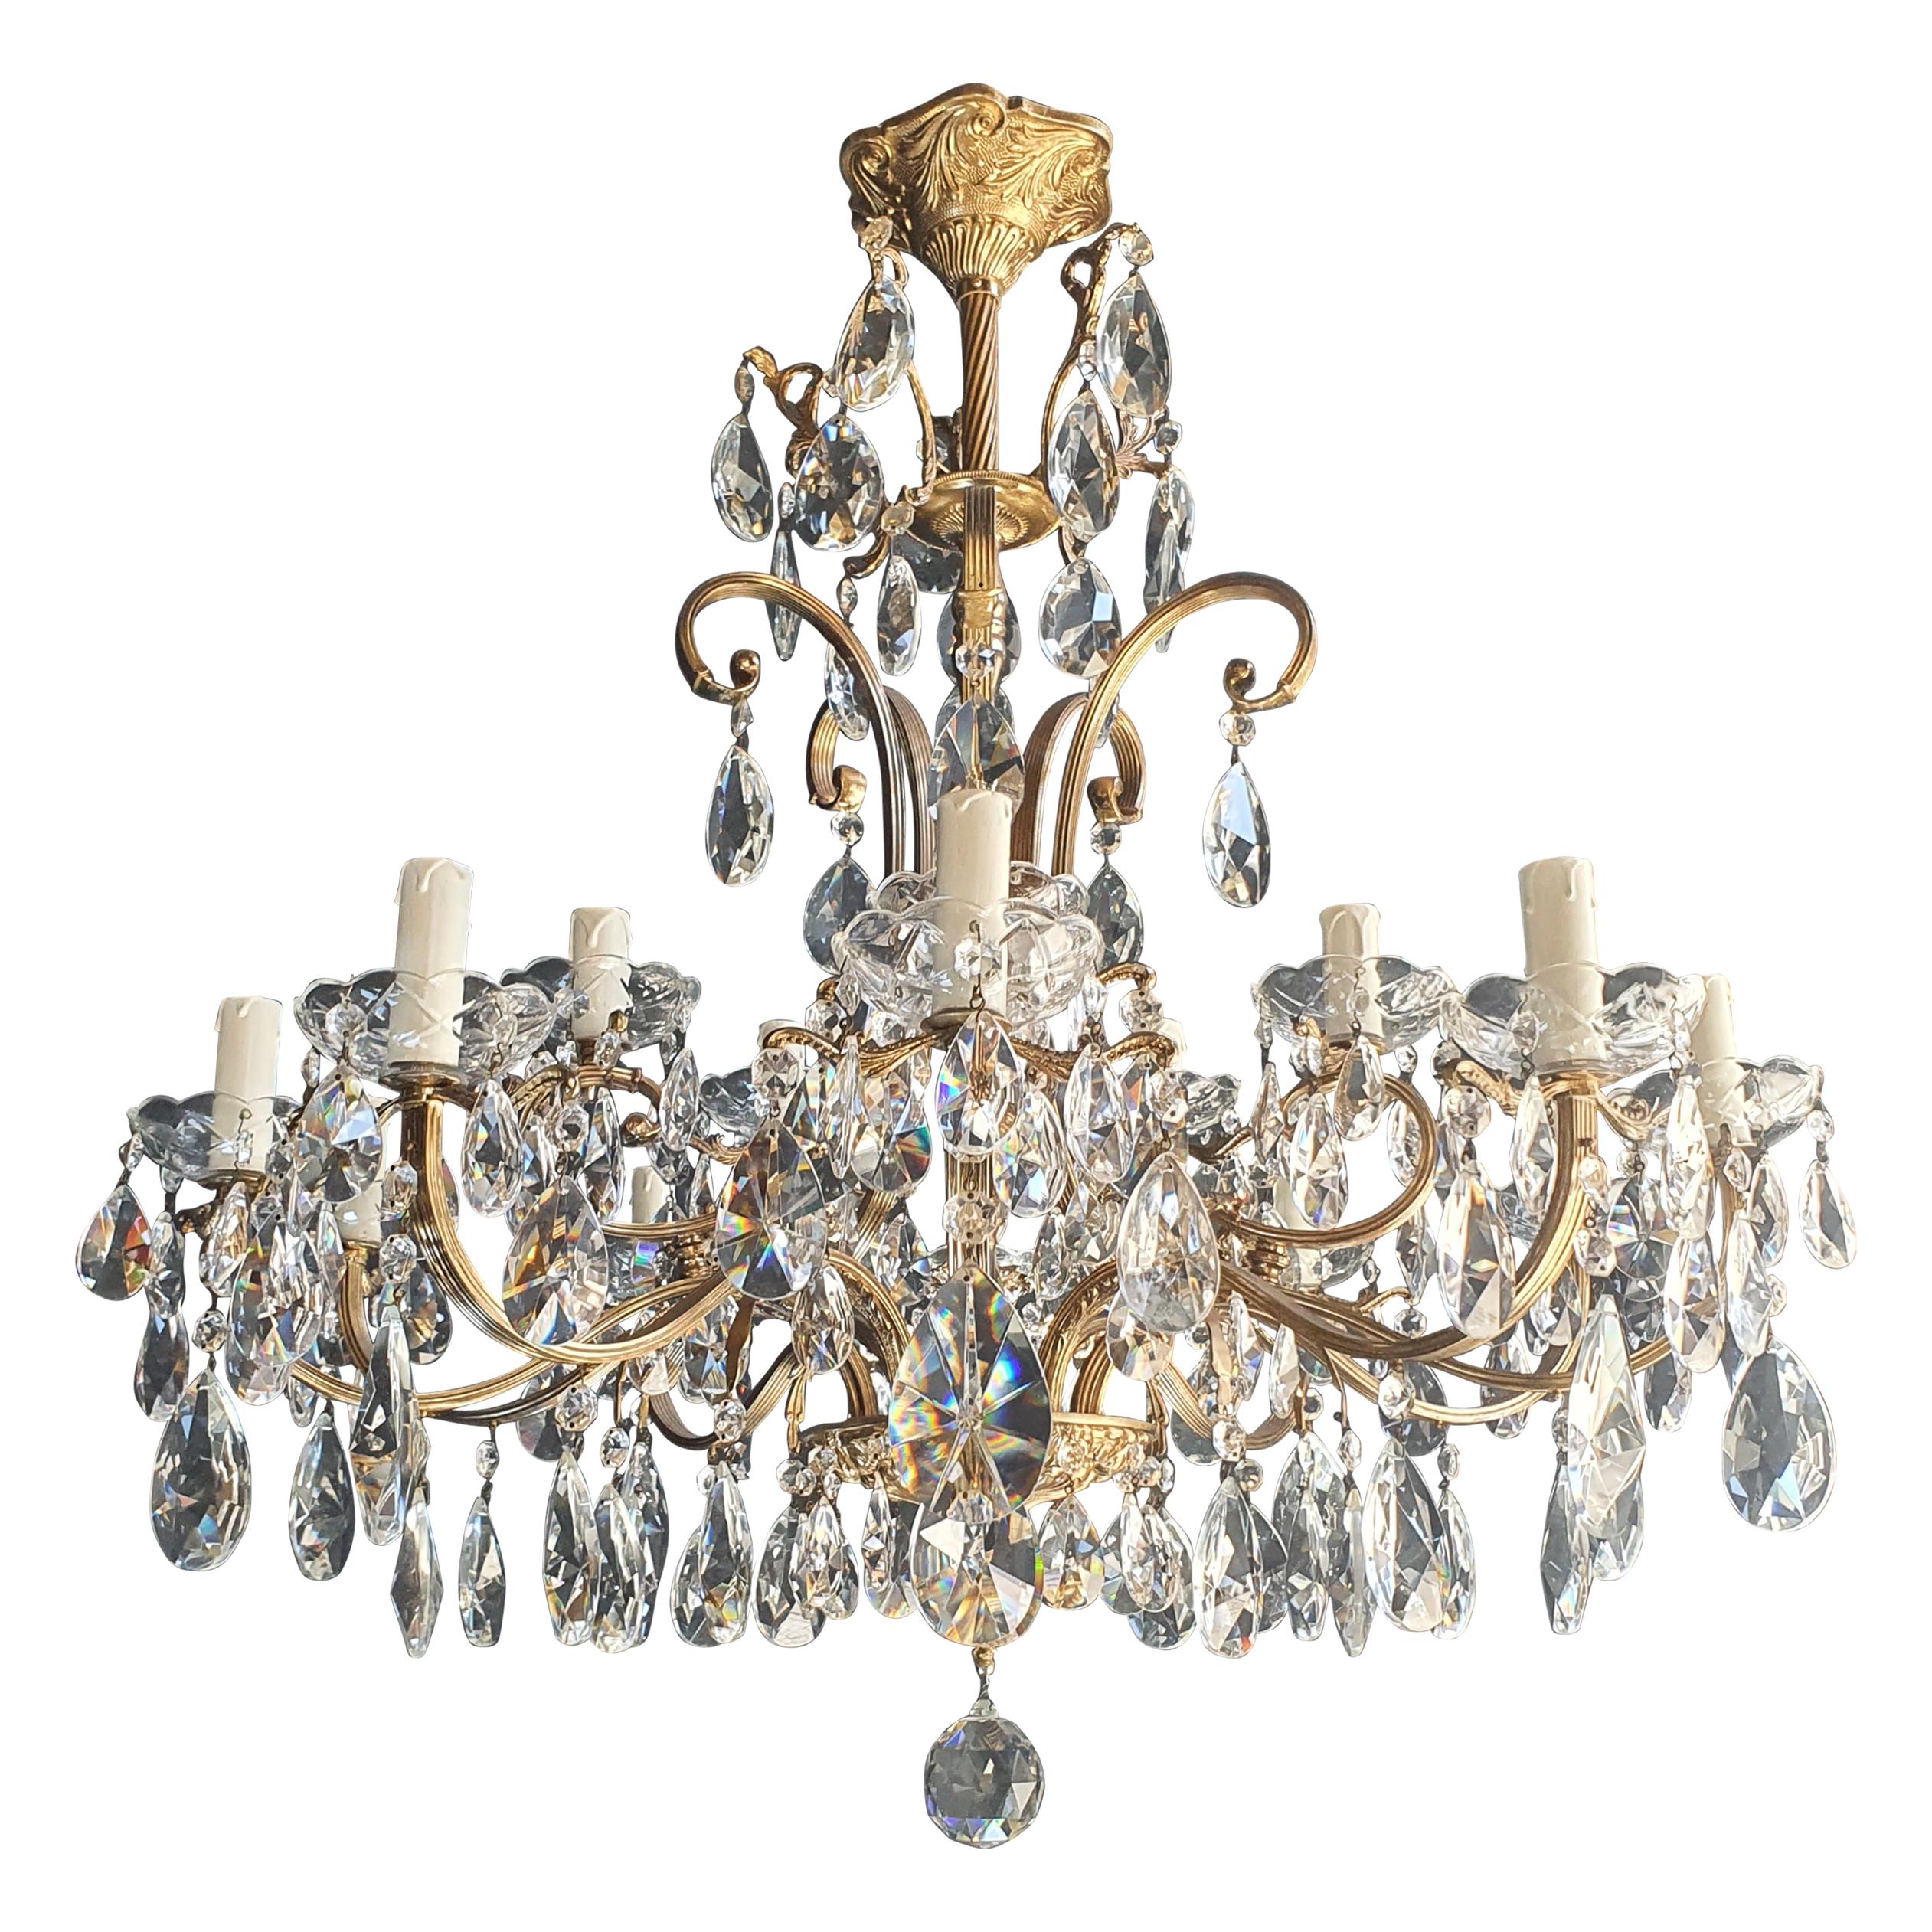 Sparkle Crystal Brass Candelabrum Antique Chandelier Ceiling Lustre Art Nouveau